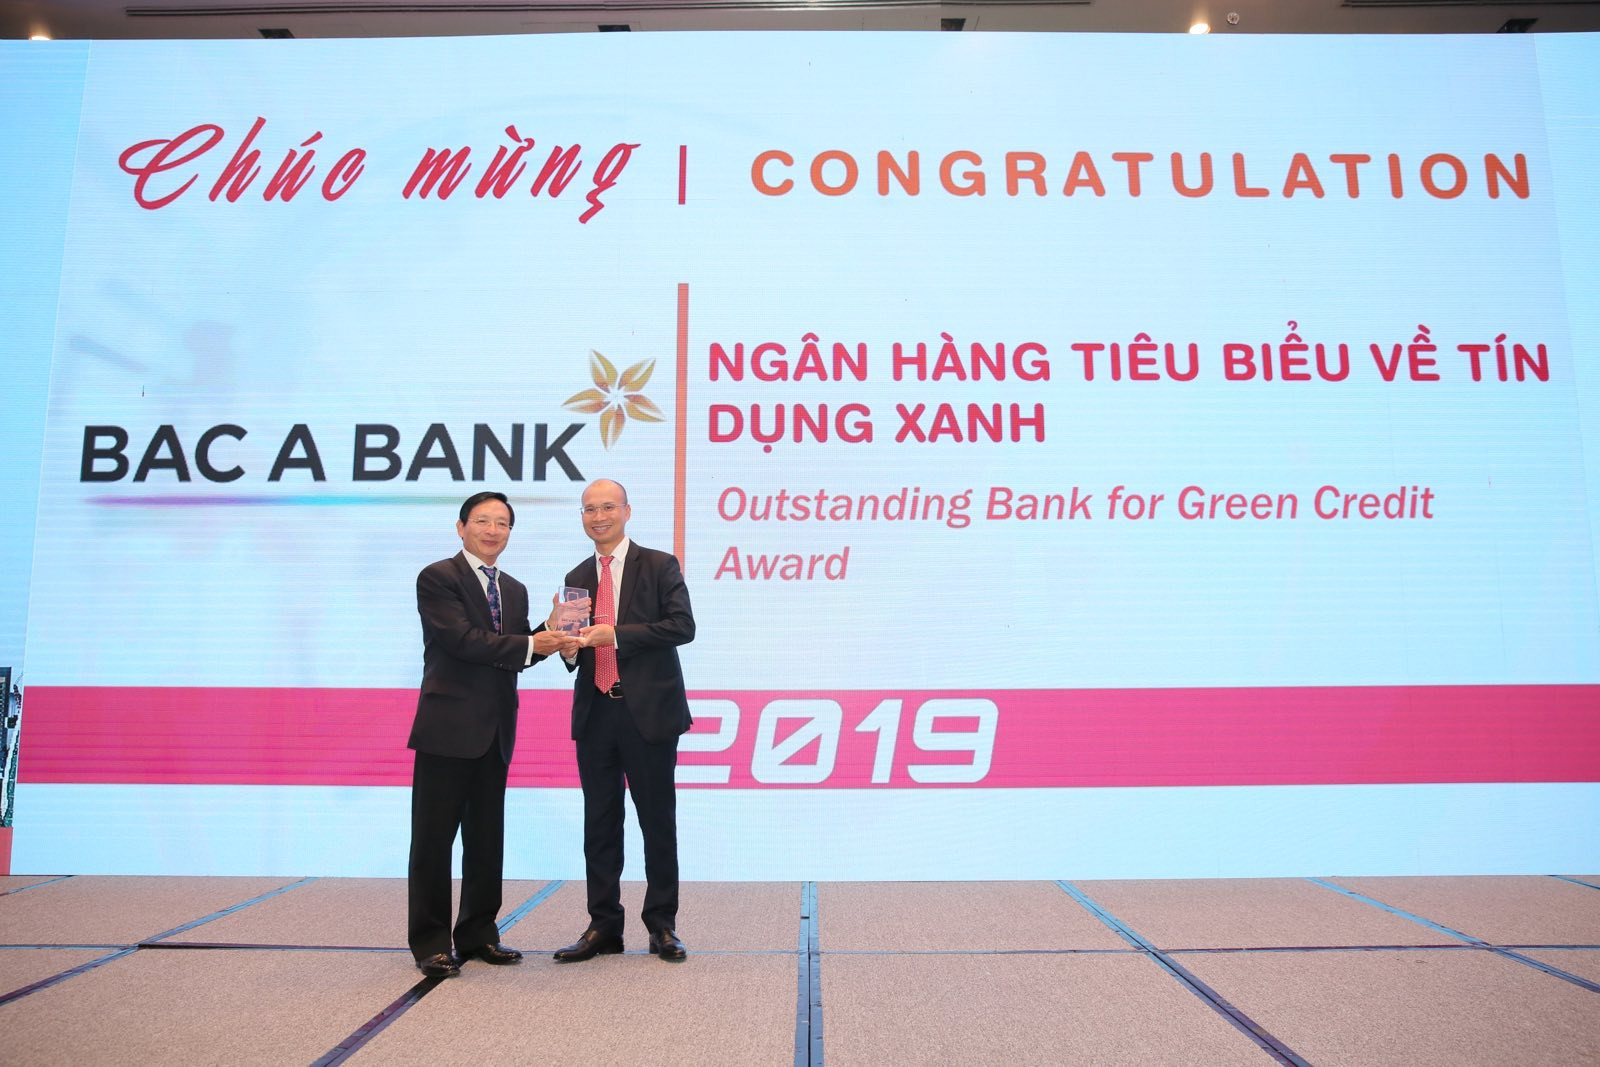 BAC A BANK vinh dự nhận giải thưởng Ngân hàng tiêu biểu về Tín dụng xanh năm 2019. Ảnh: P.V